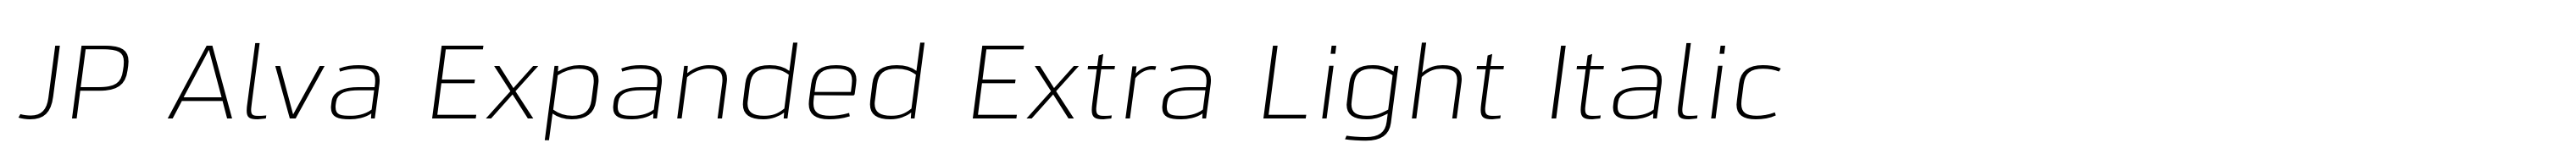 JP Alva Expanded Extra Light Italic